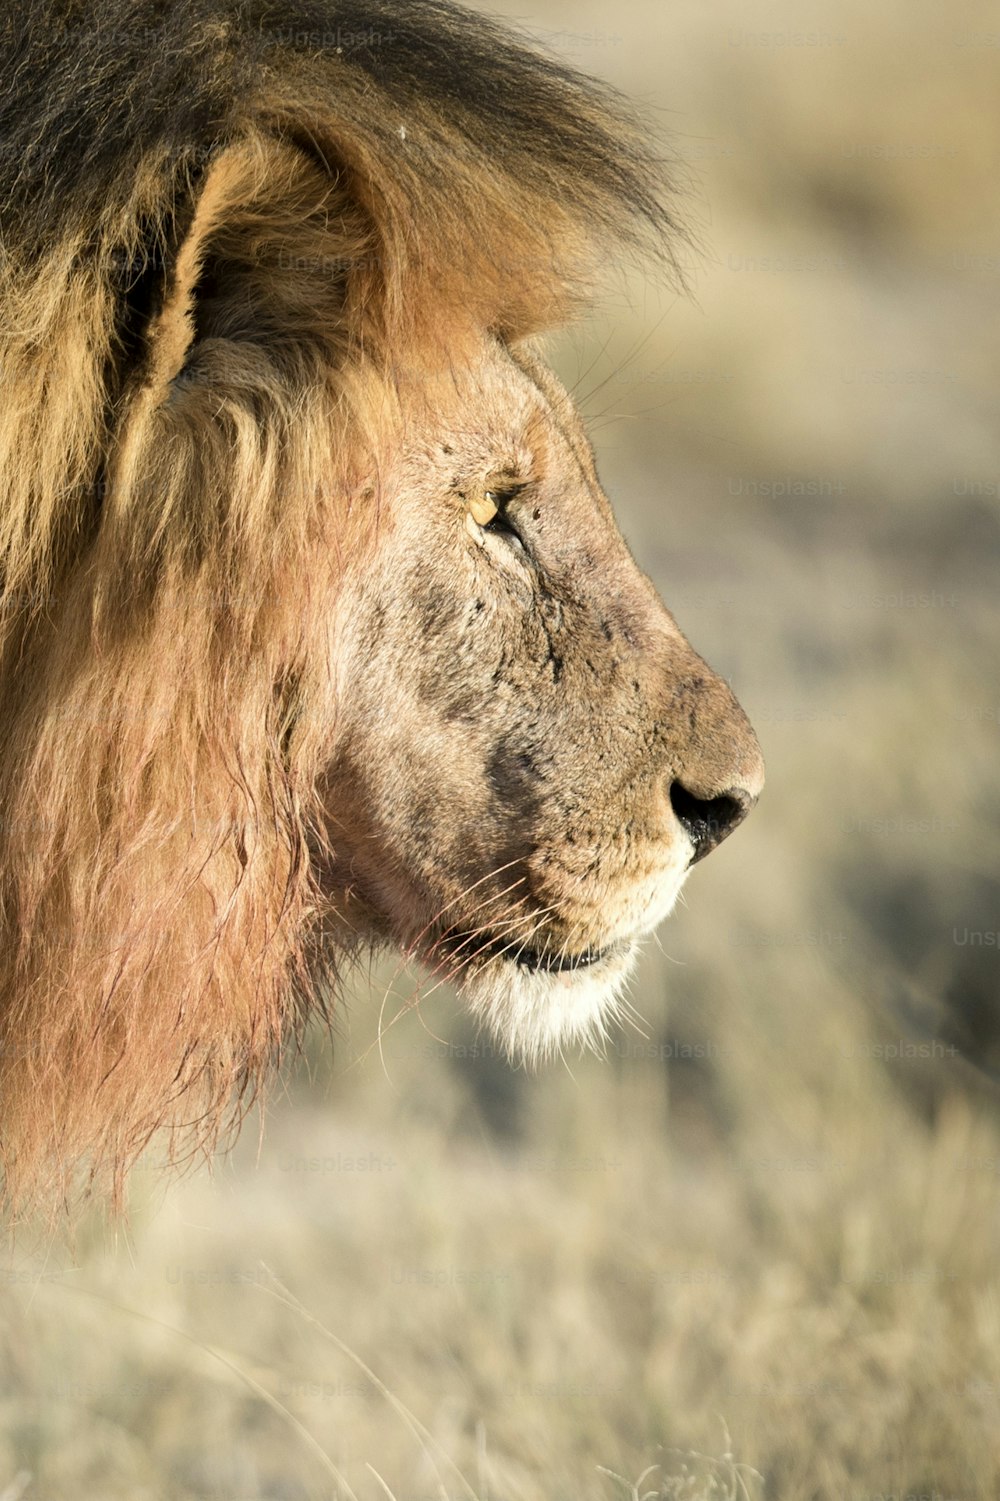 たてがみに血を塗ったオスのライオン、ナミビアのエトーシャ国立公園。